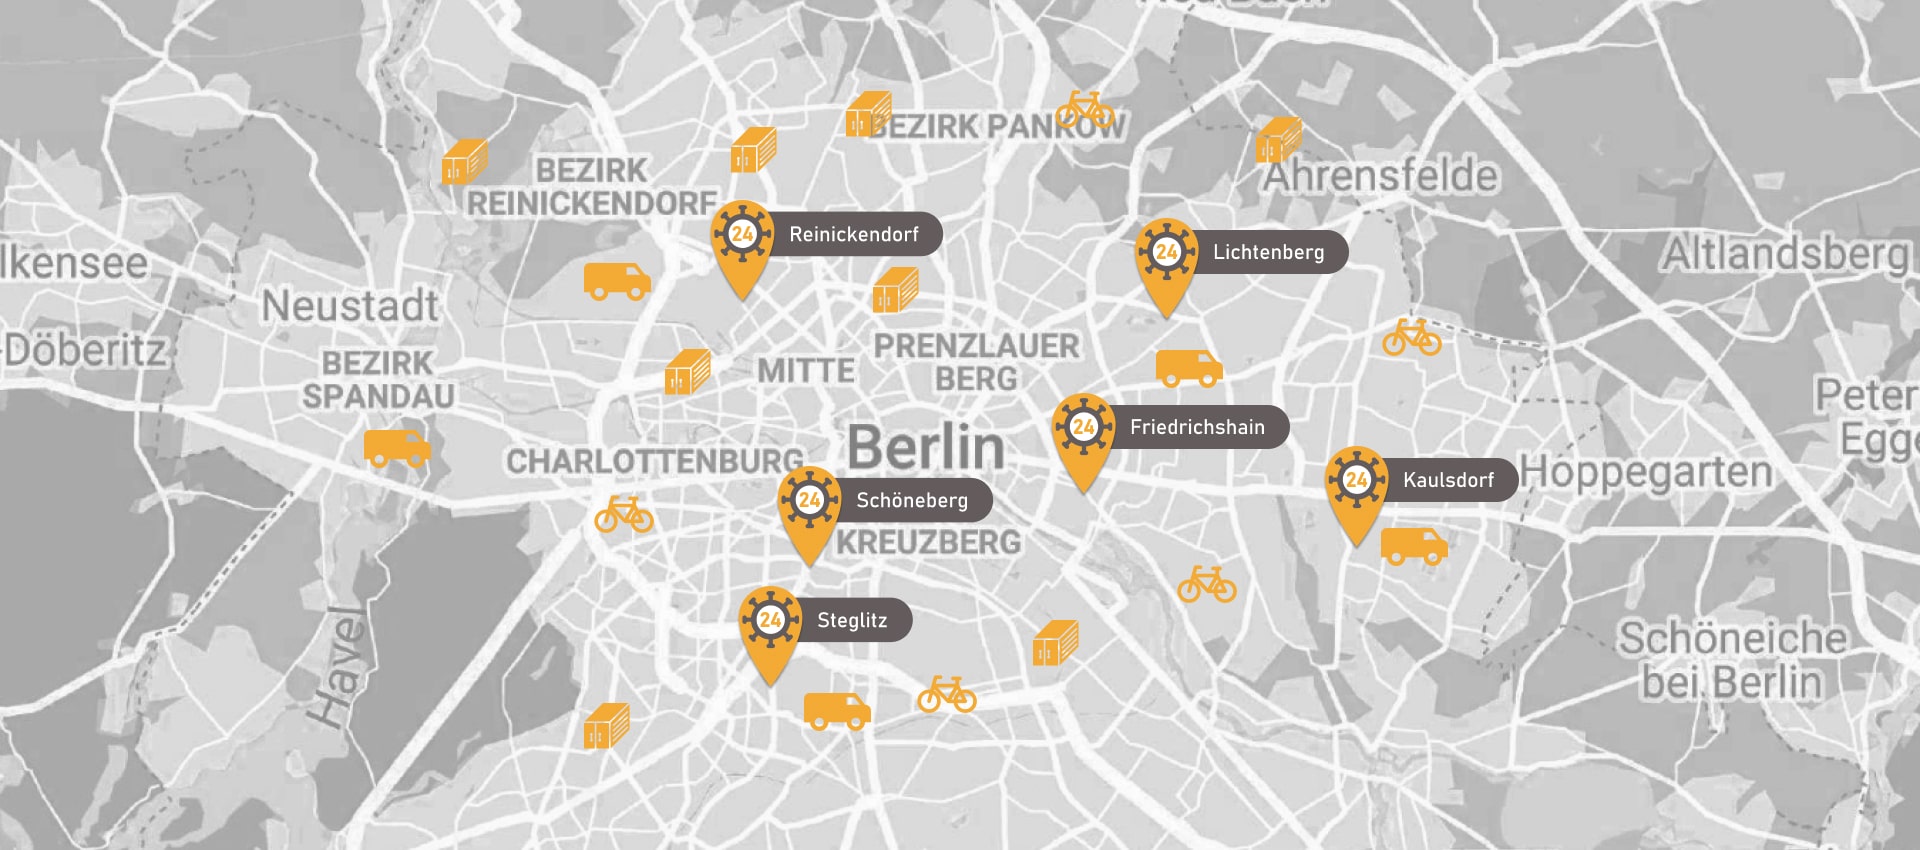 test-to-go-berlin-karte-berlin-schoeneberg-min